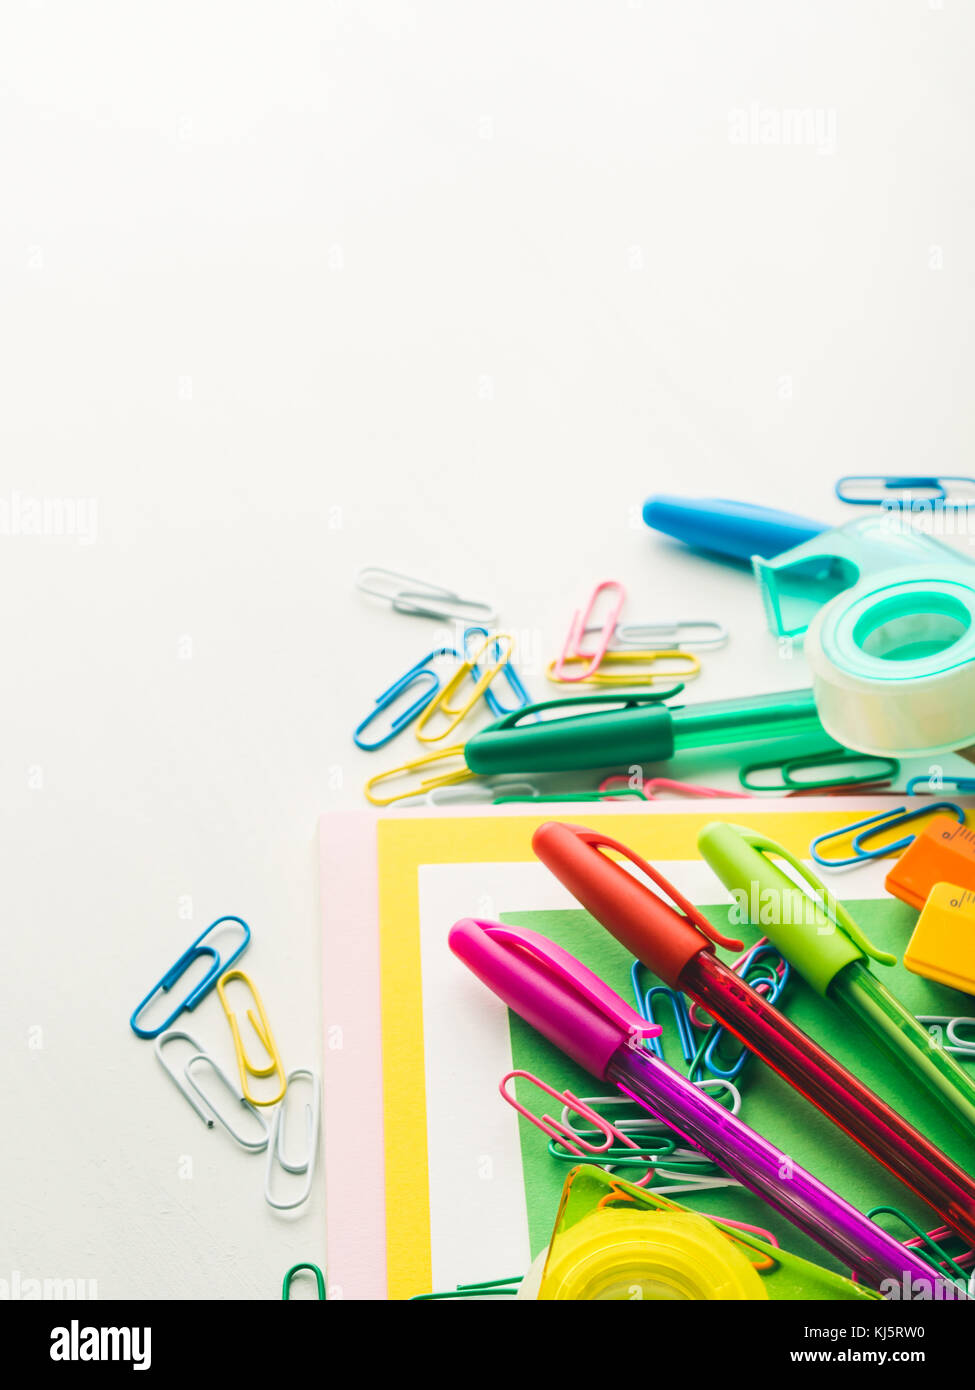 Schreibwaren bunt Schreiben Werkzeuge Zubehör Kugelschreiber Bleistifte,  farbiges Papier. zurück zu Schule. Bürobedarf Produkte Stockfotografie -  Alamy